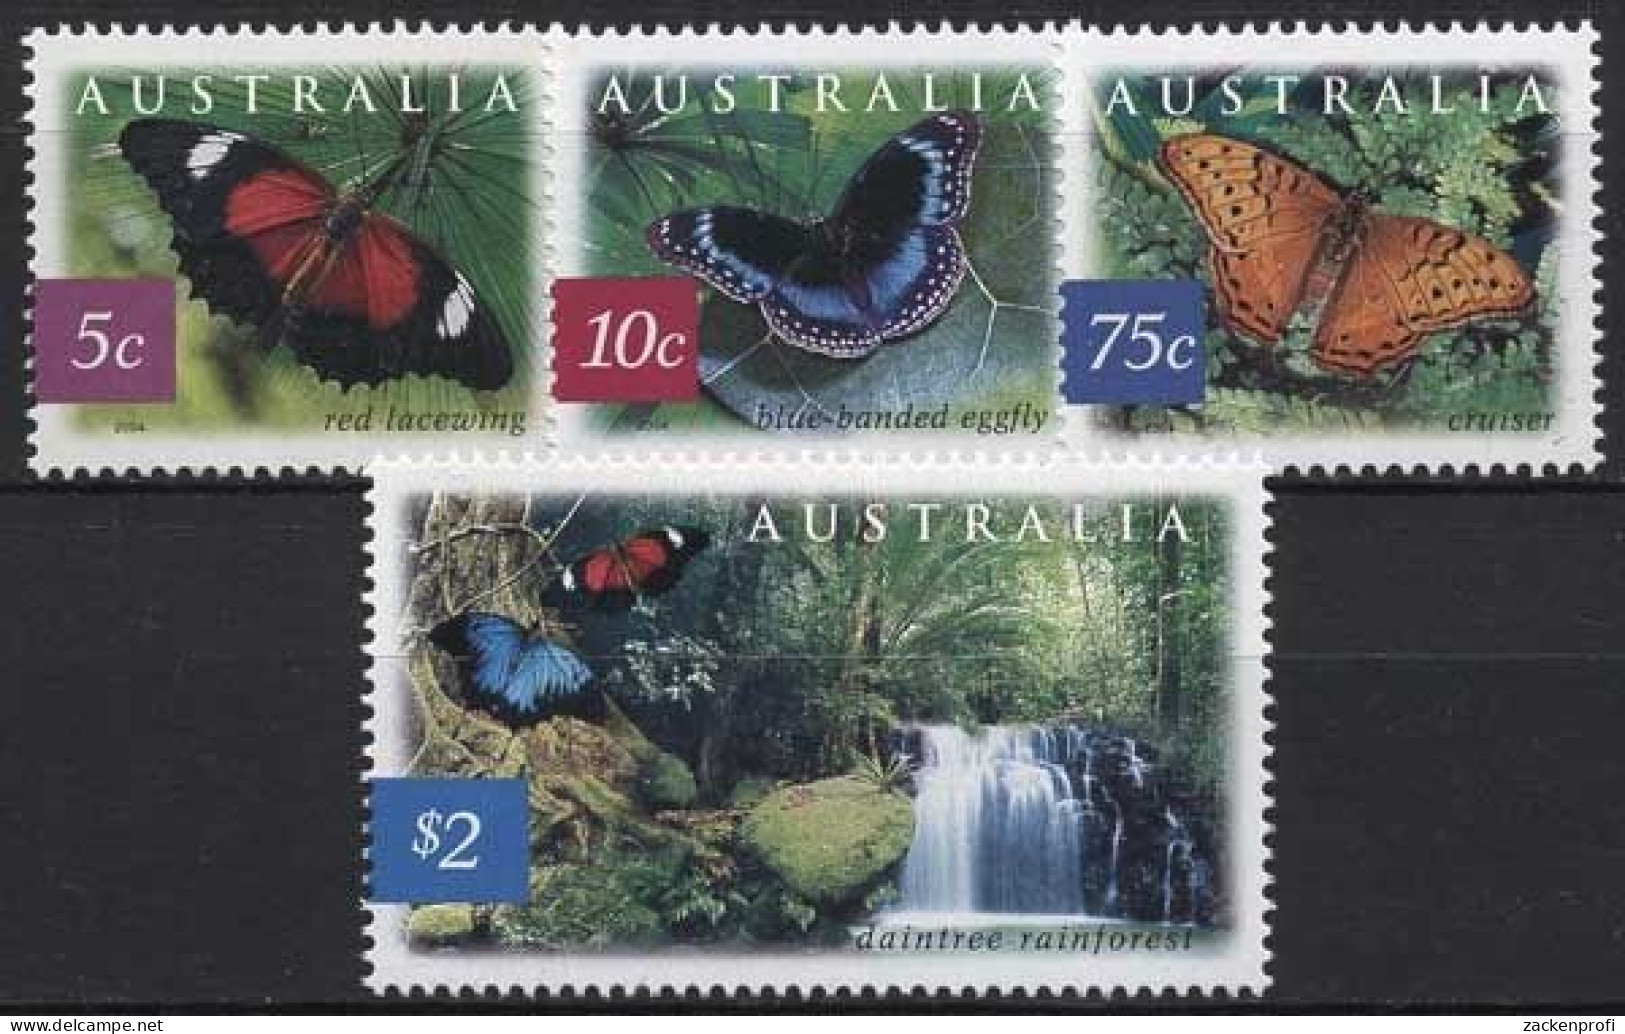 Australien 2004 Australischen Regenwald Schmetterlinge 2307/10 Postfrisch - Mint Stamps